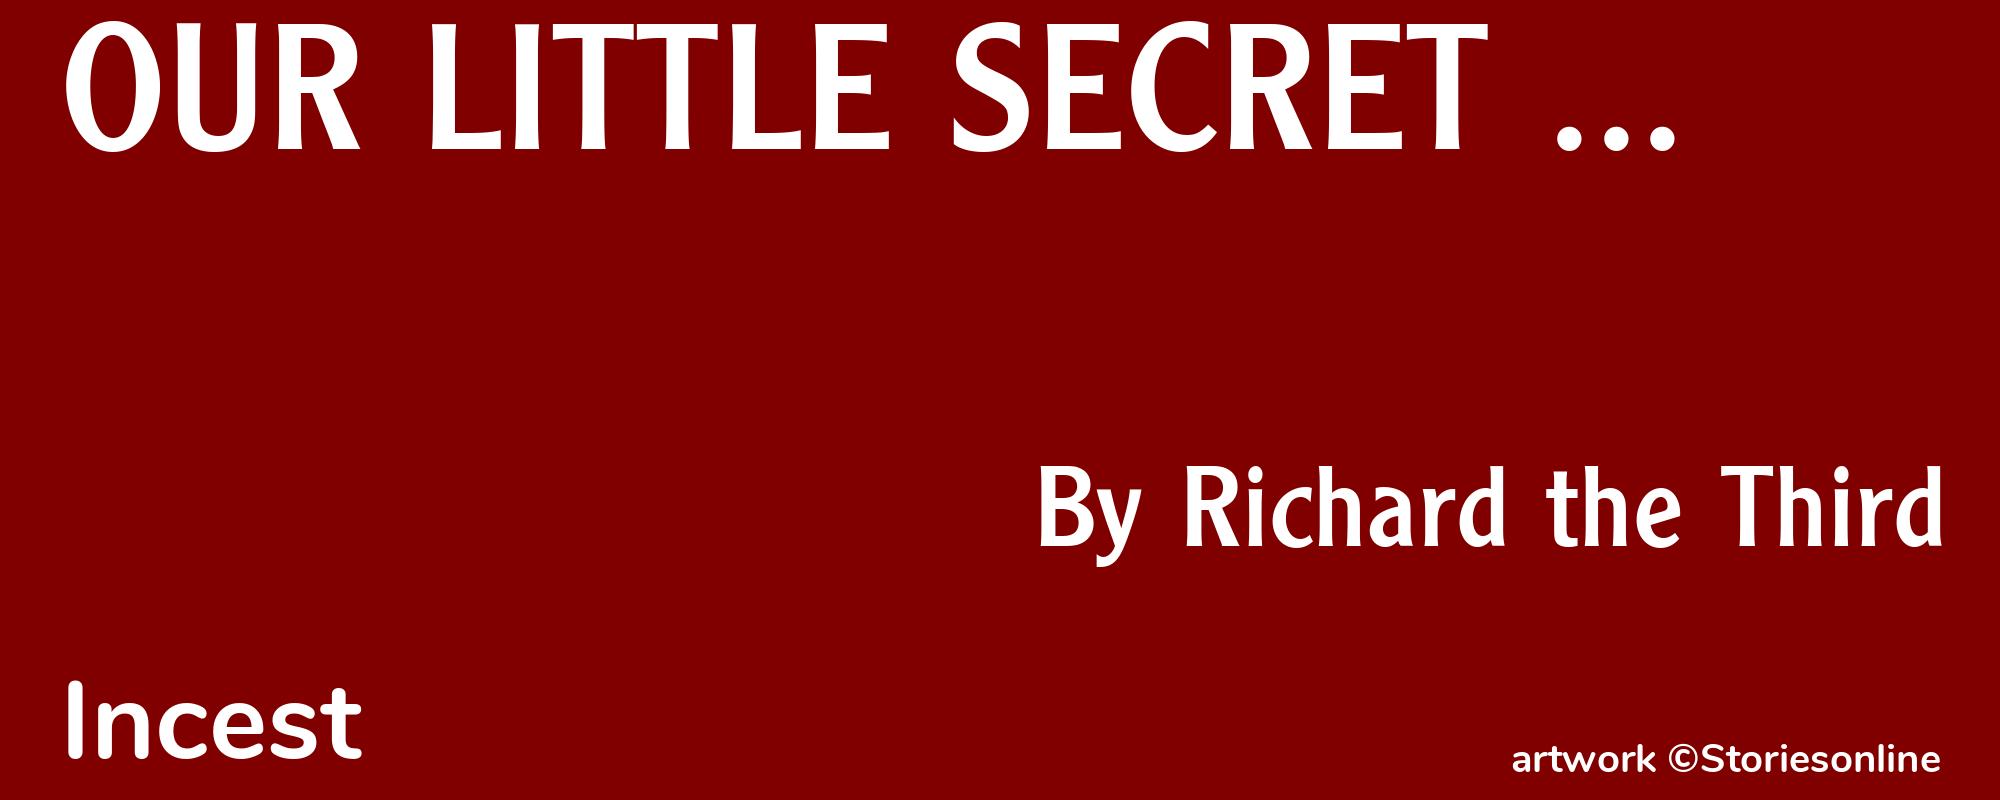 OUR LITTLE SECRET ... - Cover